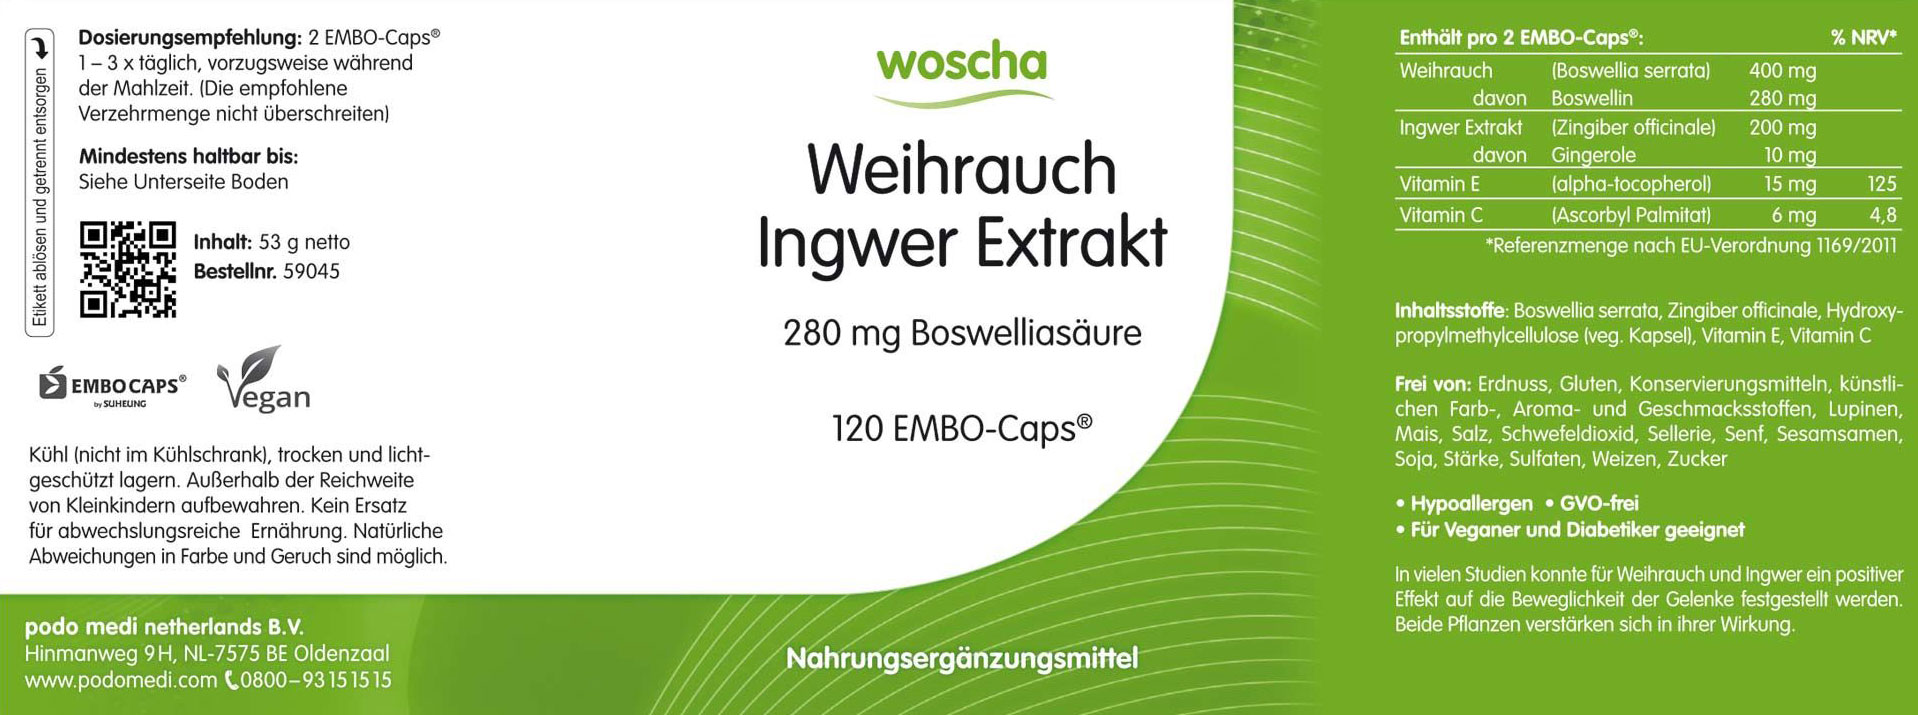 Woscha Weihrauch Extrakt Plus von podo medi beinhaltet 180 Kapseln Etikett